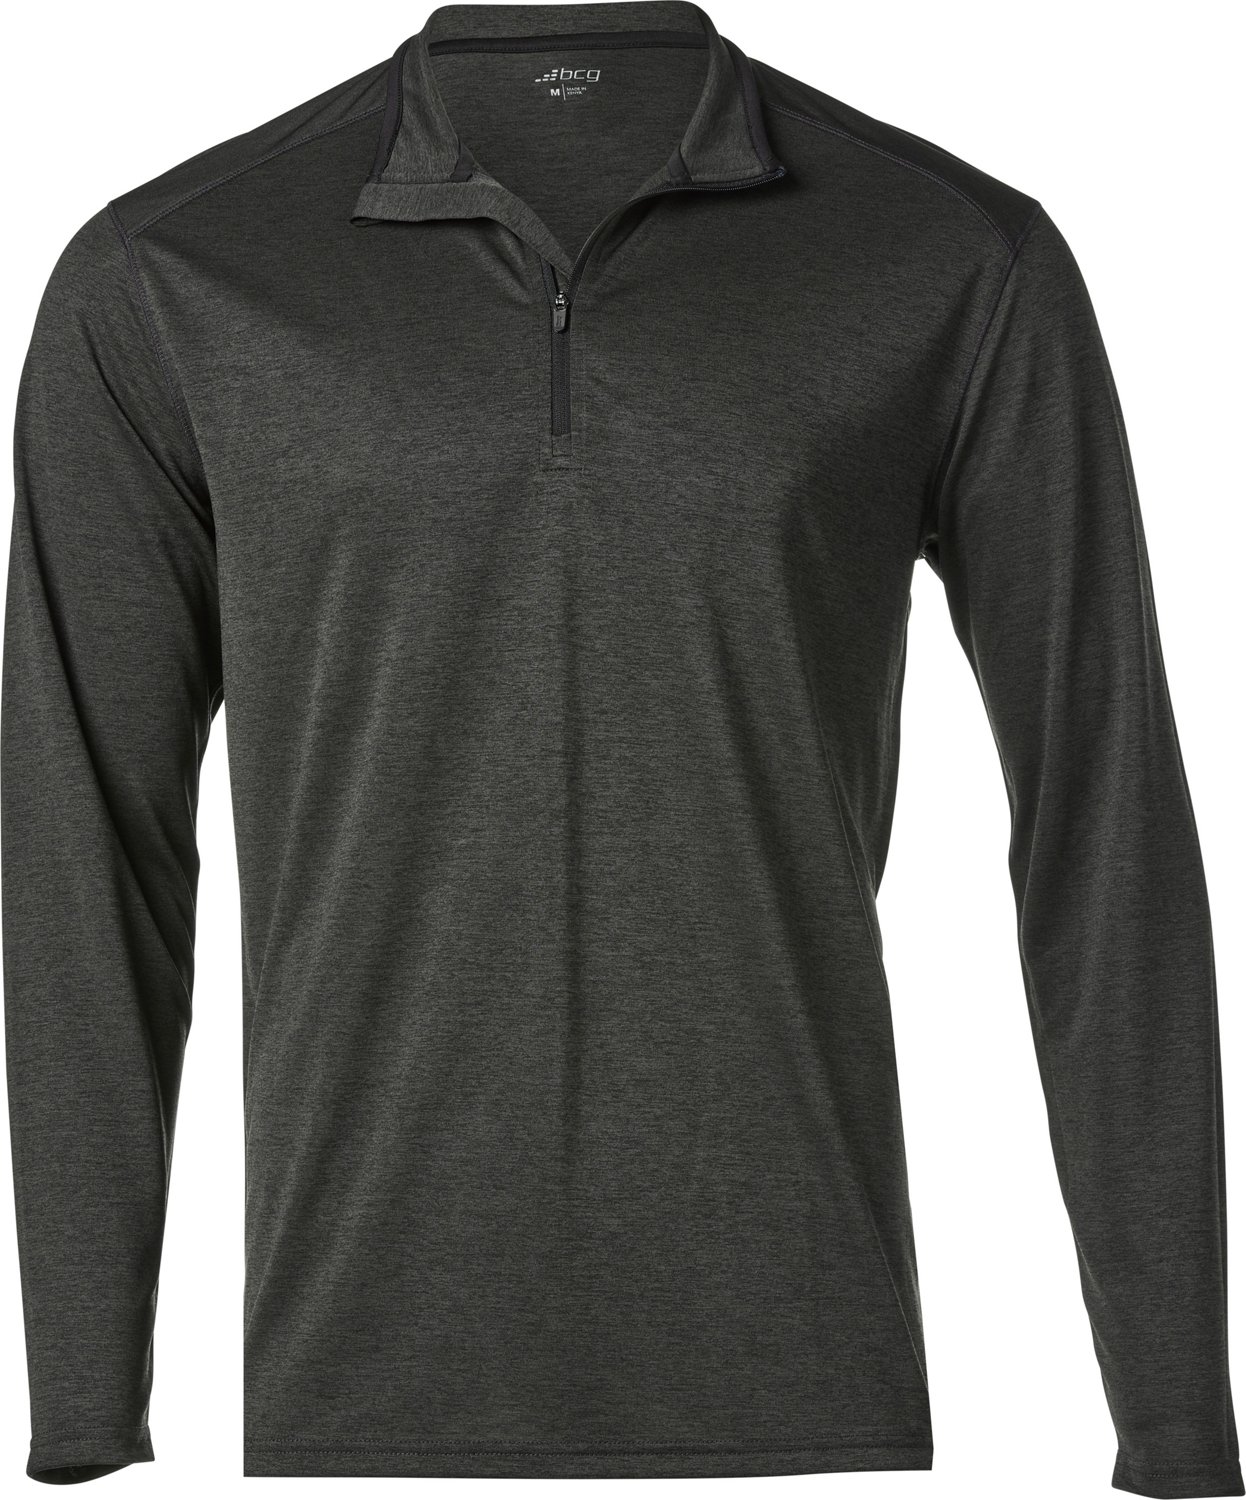 BCG Men’s Turbo Melange Half Zipper Sweatshirt                                                                                 - view number 1 selected